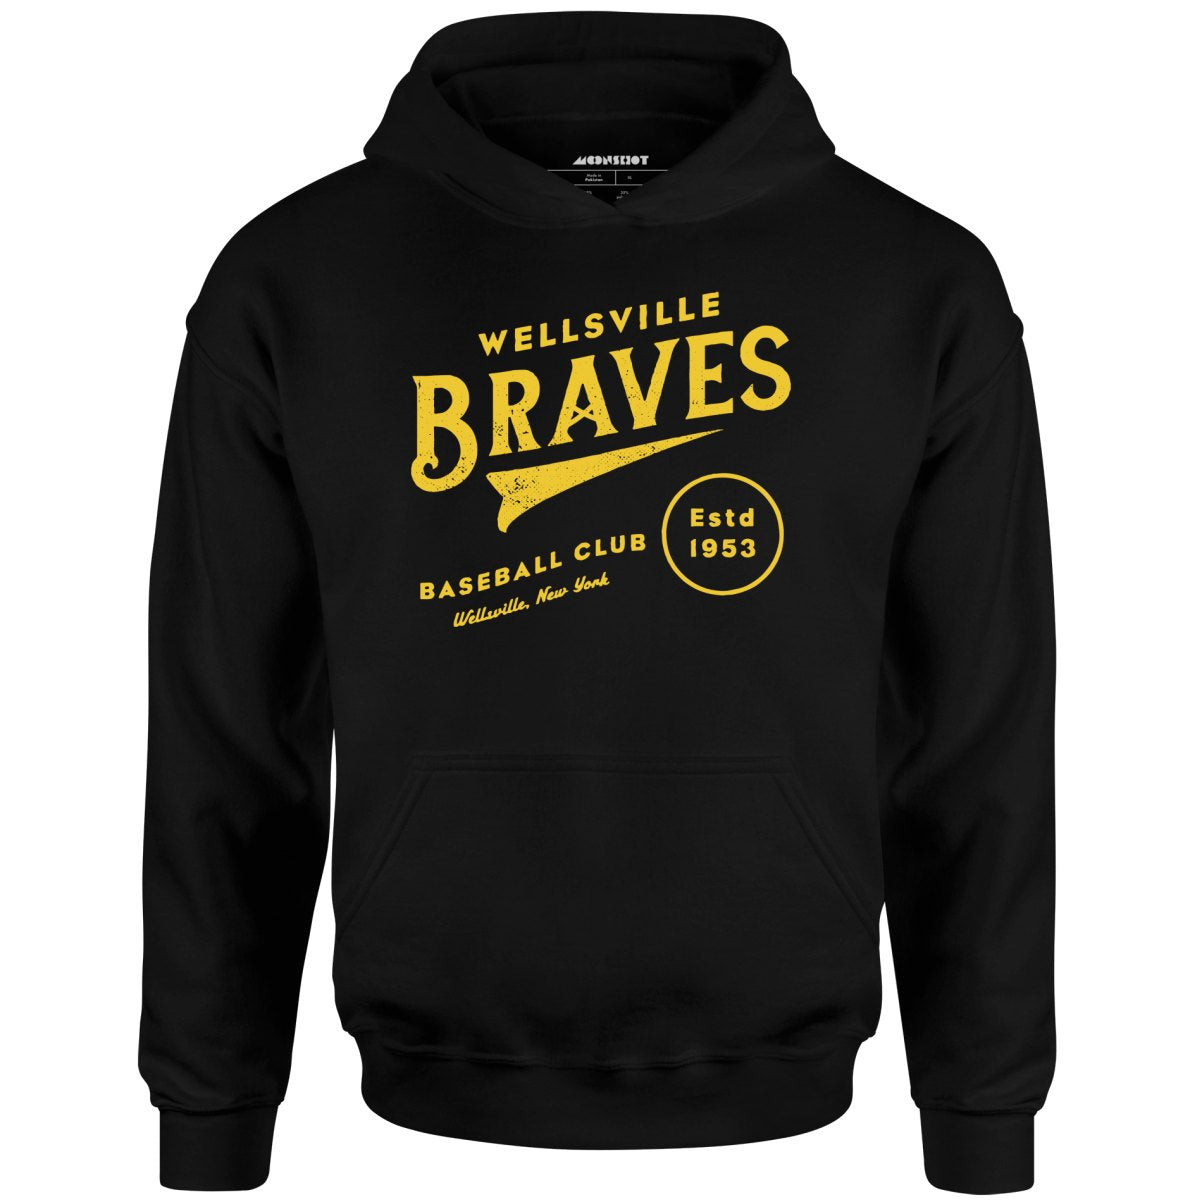 Wellsville Braves - New York - Vintage Defunct Baseball Teams - Unisex Hoodie